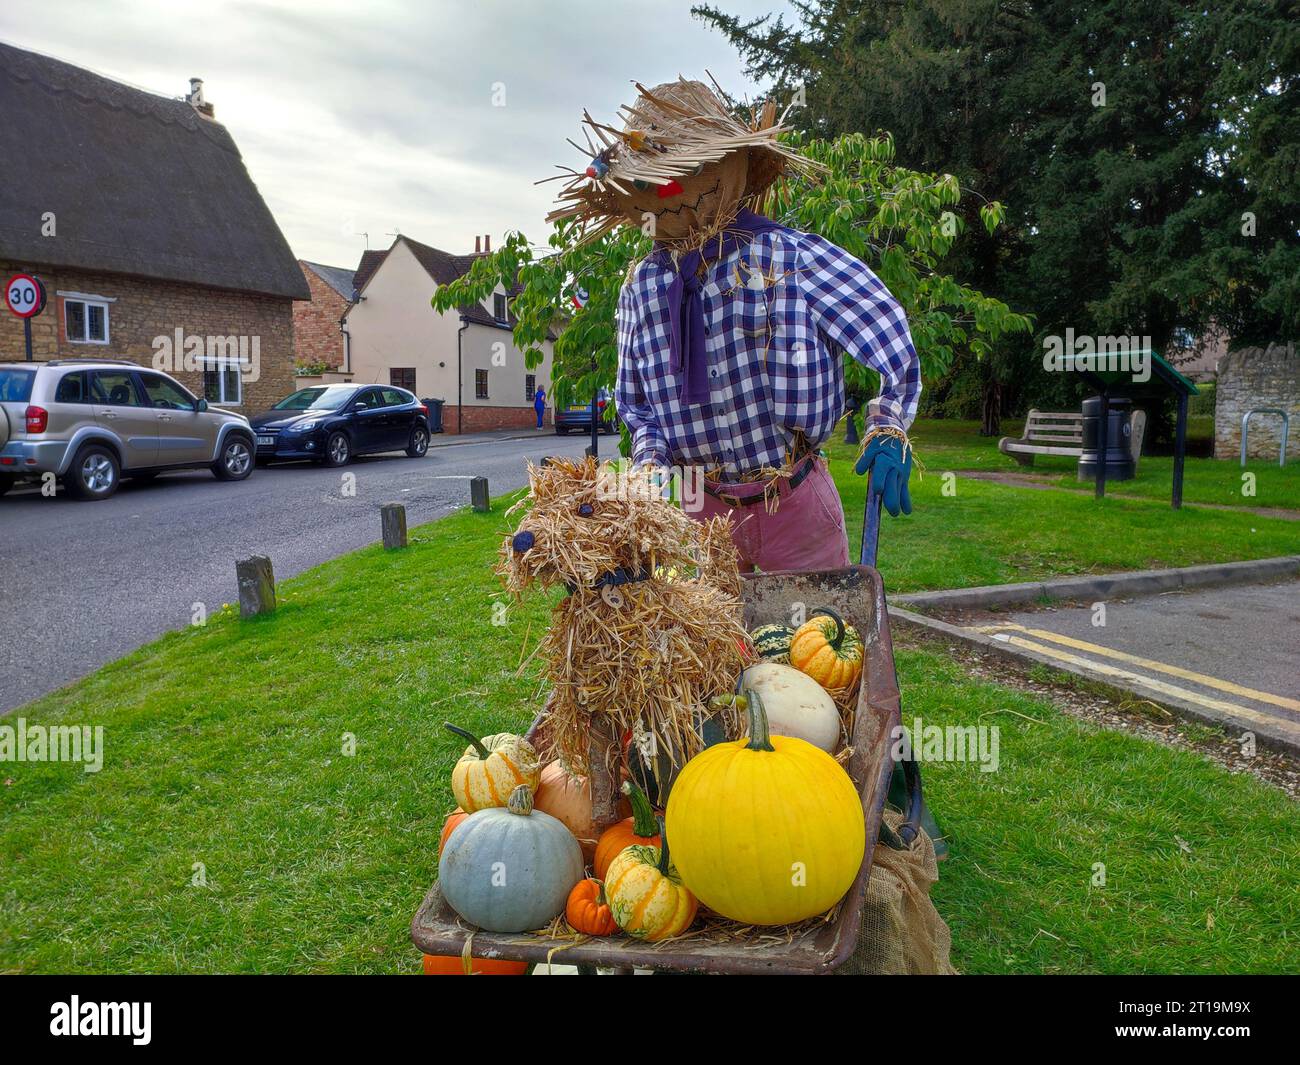 Épouvantail jardinier avec brouette contenant chien et citrouilles au festival de l'épouvantail sur Sharnbrook village green, Bedfordshire, Angleterre, Royaume-Uni Banque D'Images